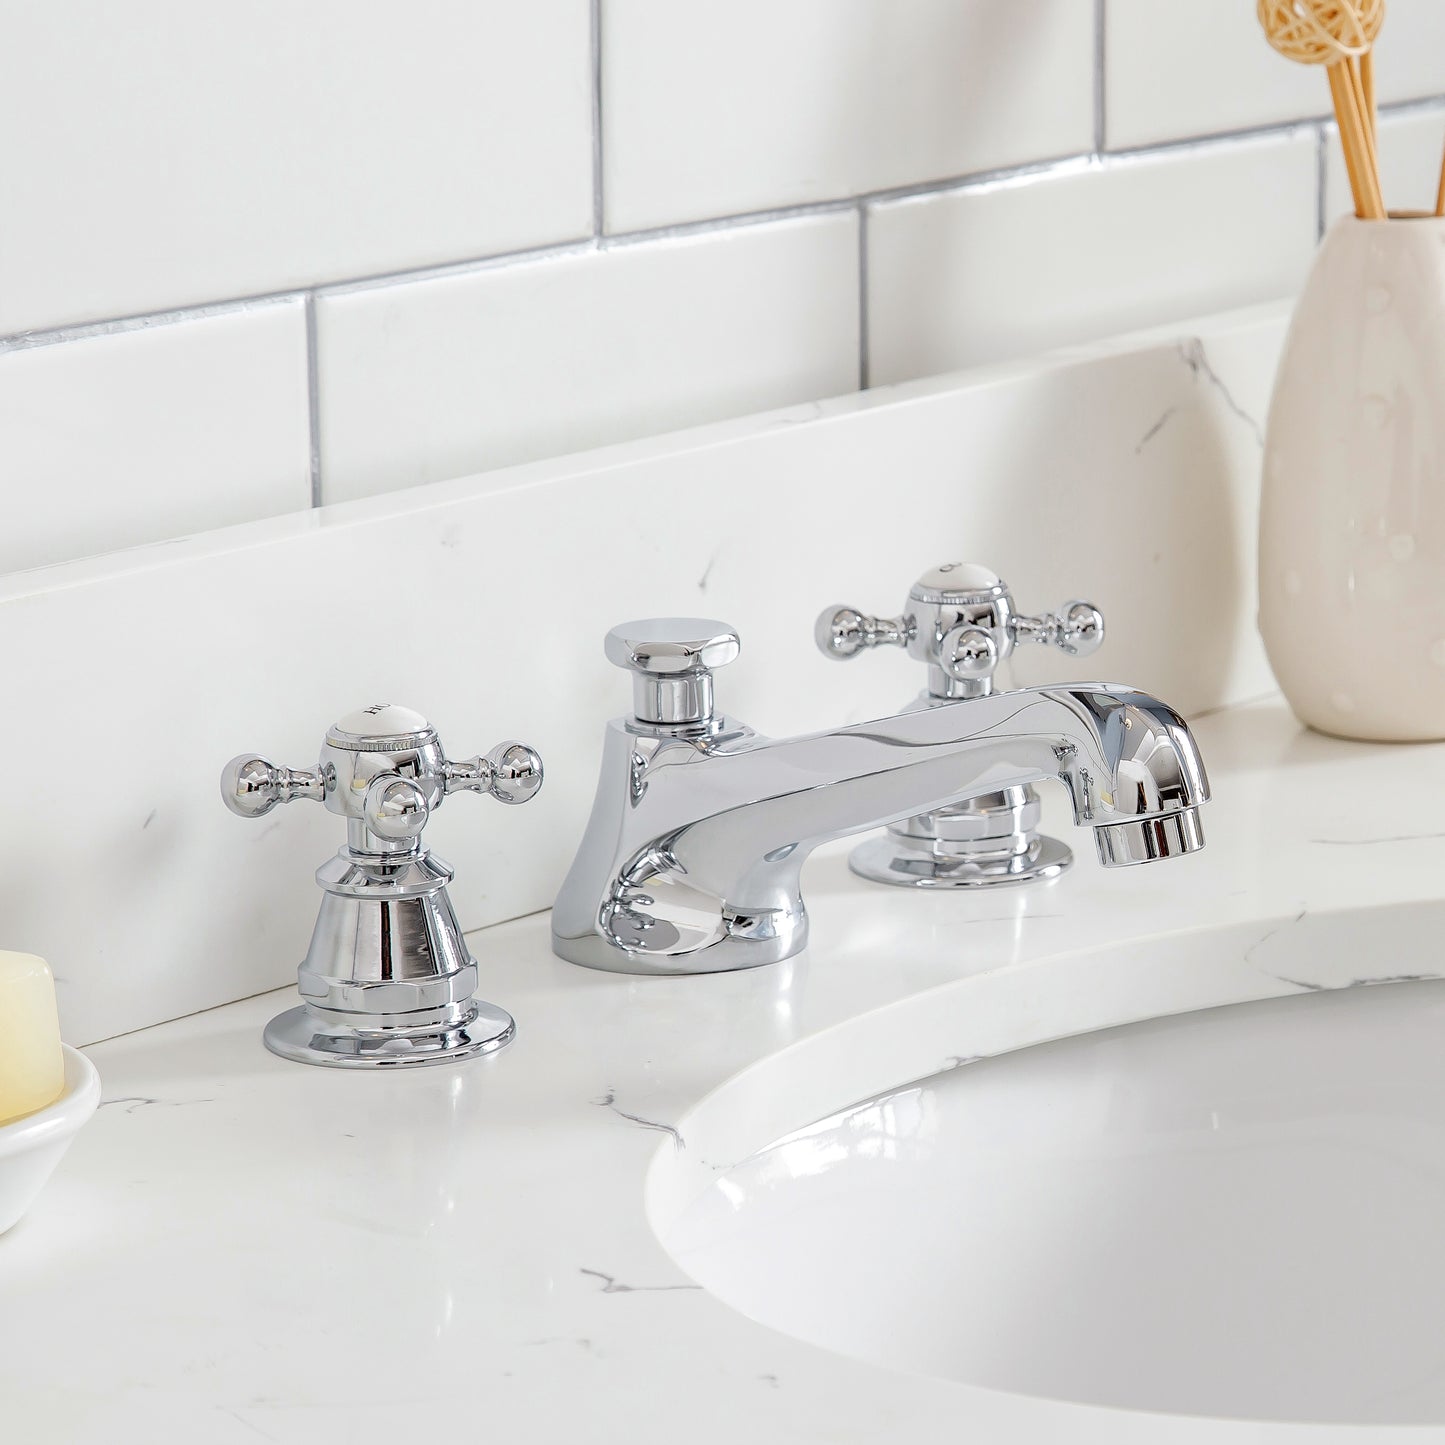 Water Creation Queen 30" Inch Single Sink Quartz Carrara Vanity with Lavatory Faucet - Luxe Bathroom Vanities